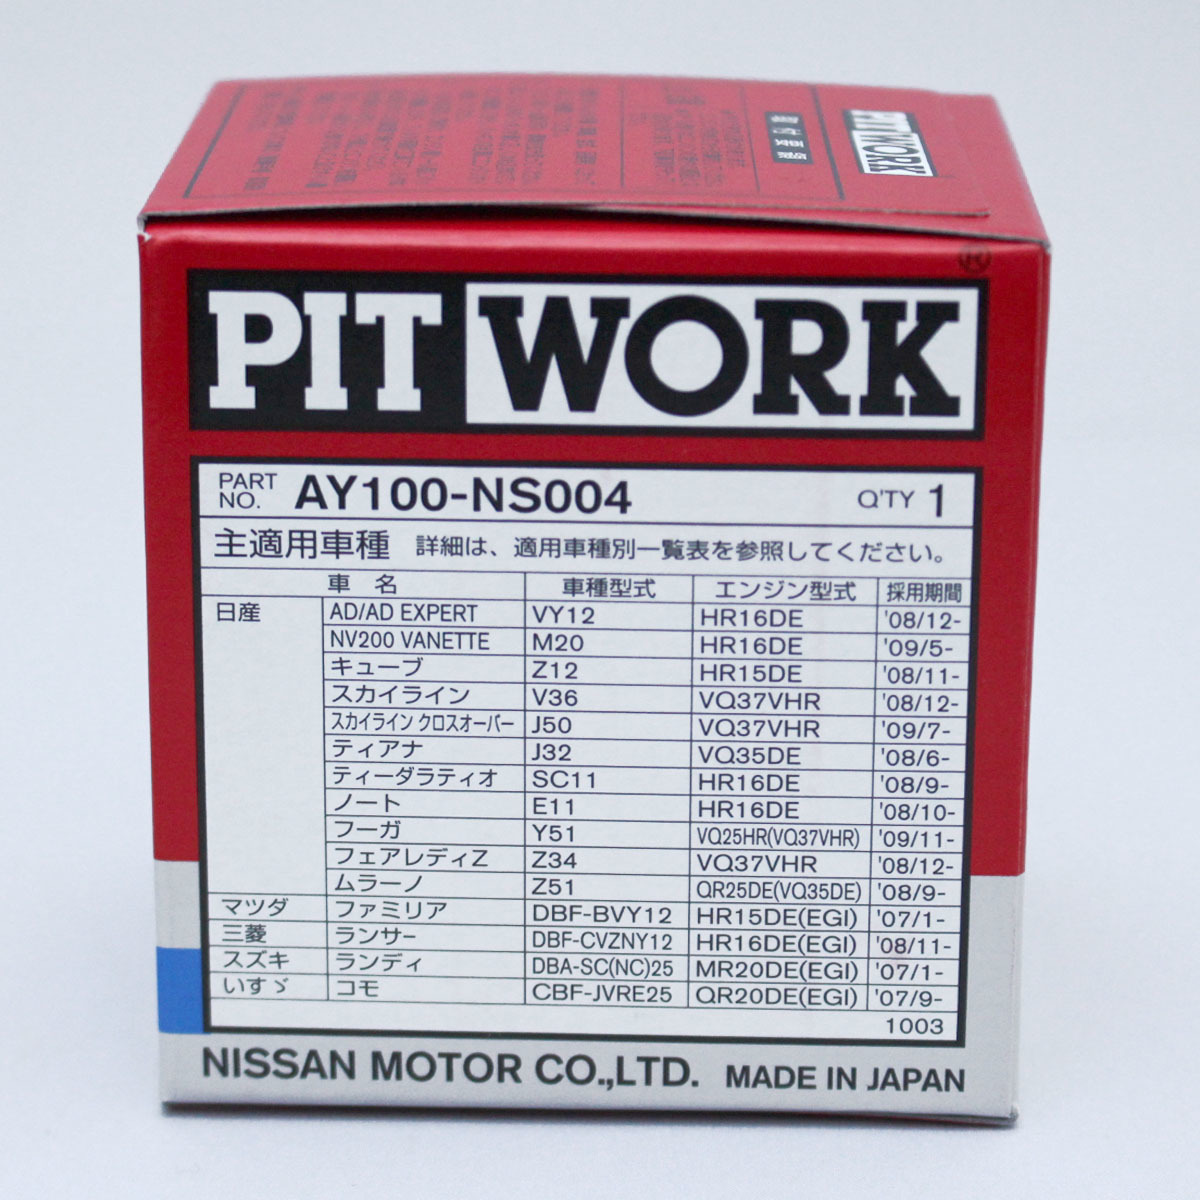 dd#5 шт. комплект AY100-NS004pito Work PITWORK масляный фильтр масляный фильтр ( Okinawa префектура Area. доставка не возможно )